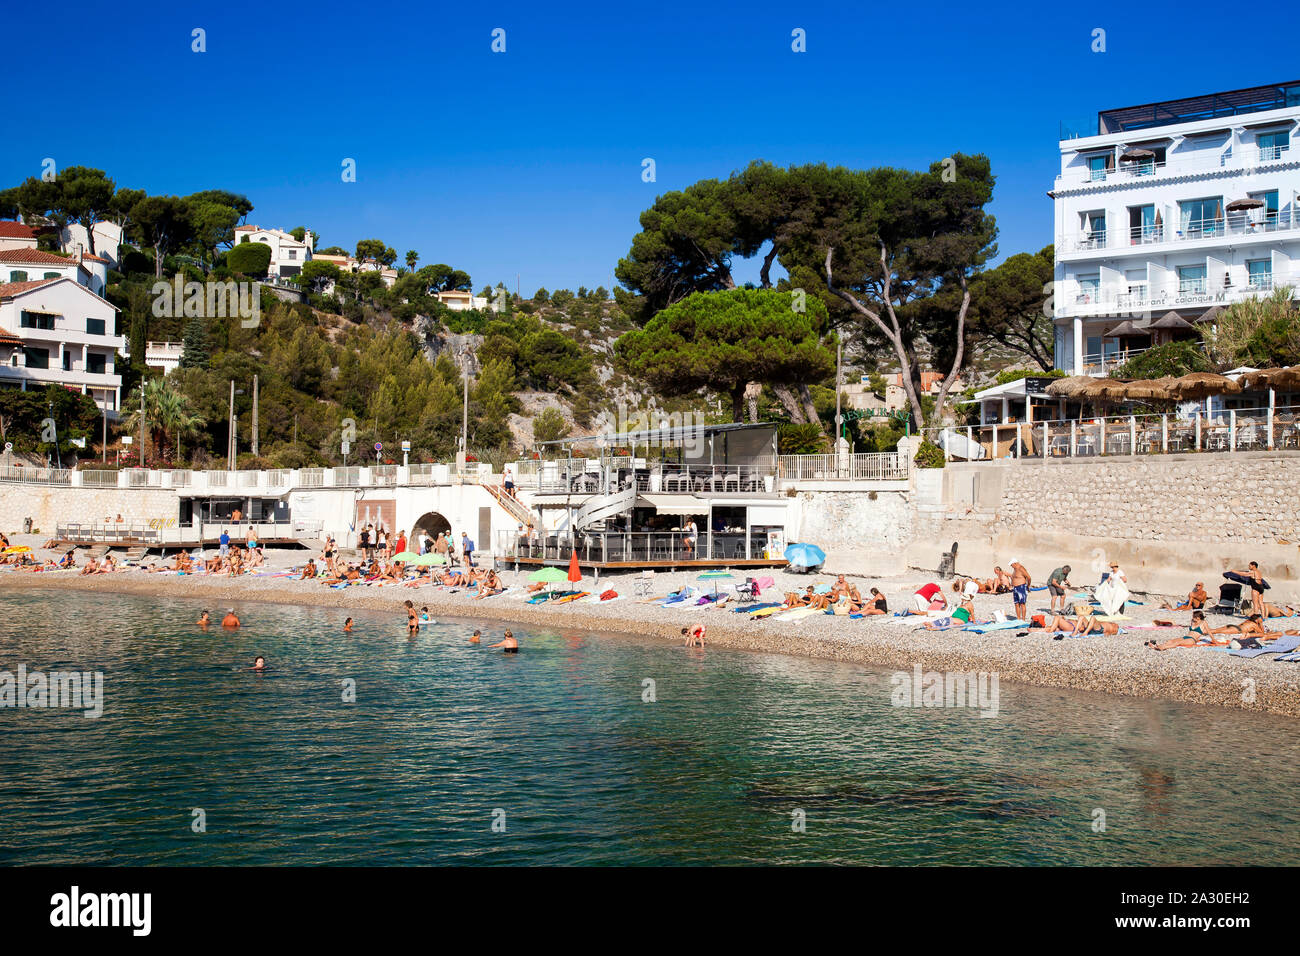 EineVilla am Strand bei Plage Le Bestouan, Cassis, Bouches-du-Rhone, Provence-Alpes-Côte d’Azur, Südfrankreich, Frankreich, Europa| A villa on the bea Stock Photo